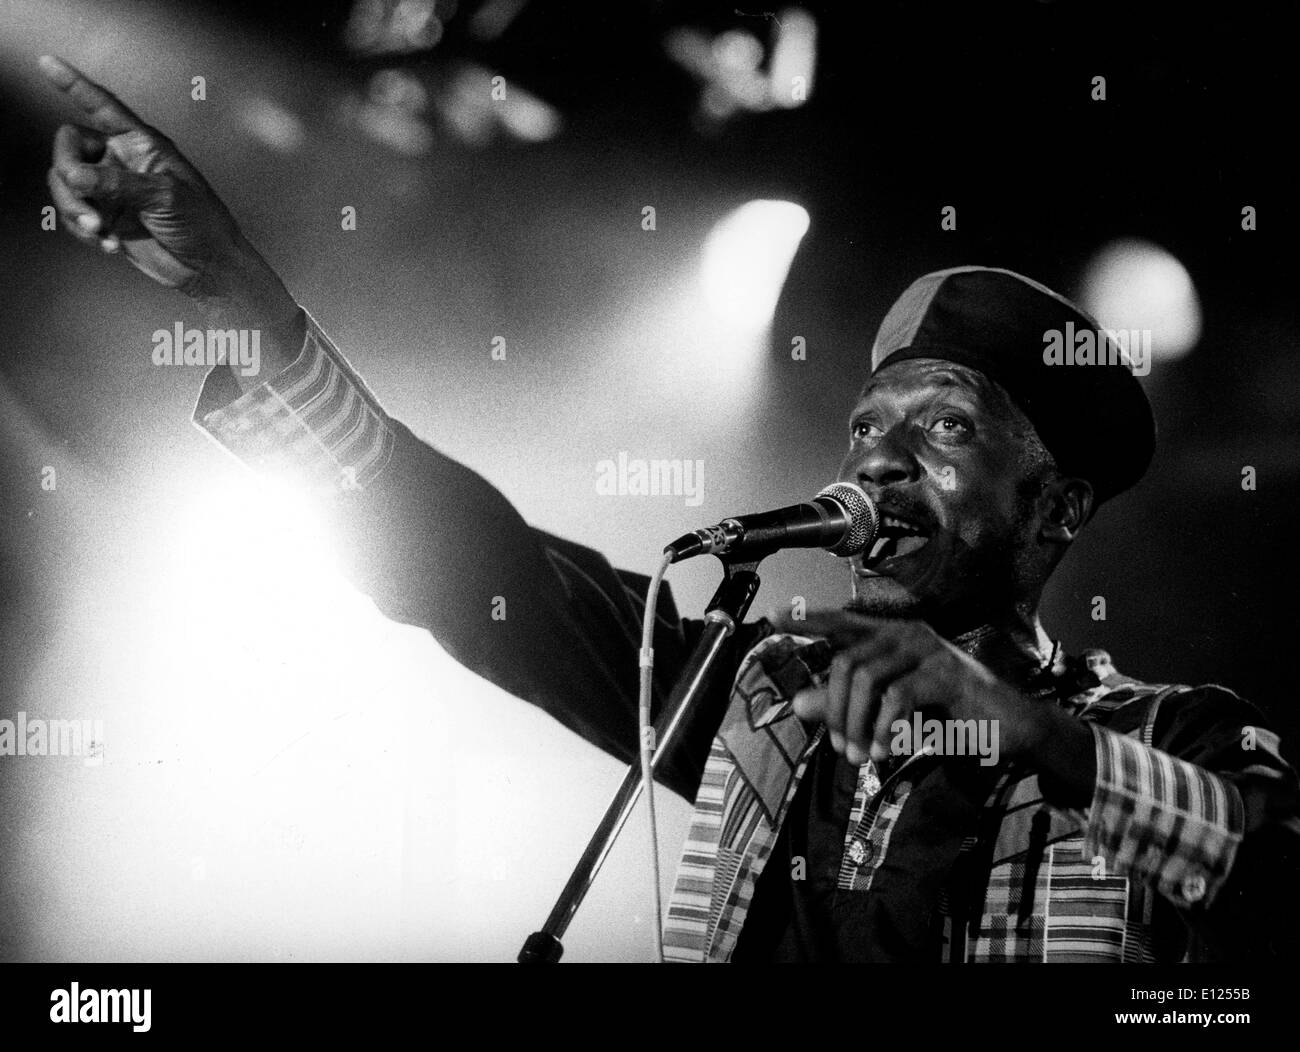 Musicien jamaïcain de reggae, Jimmy Cliff se produisant au Festival de Jazz de Montreux Banque D'Images